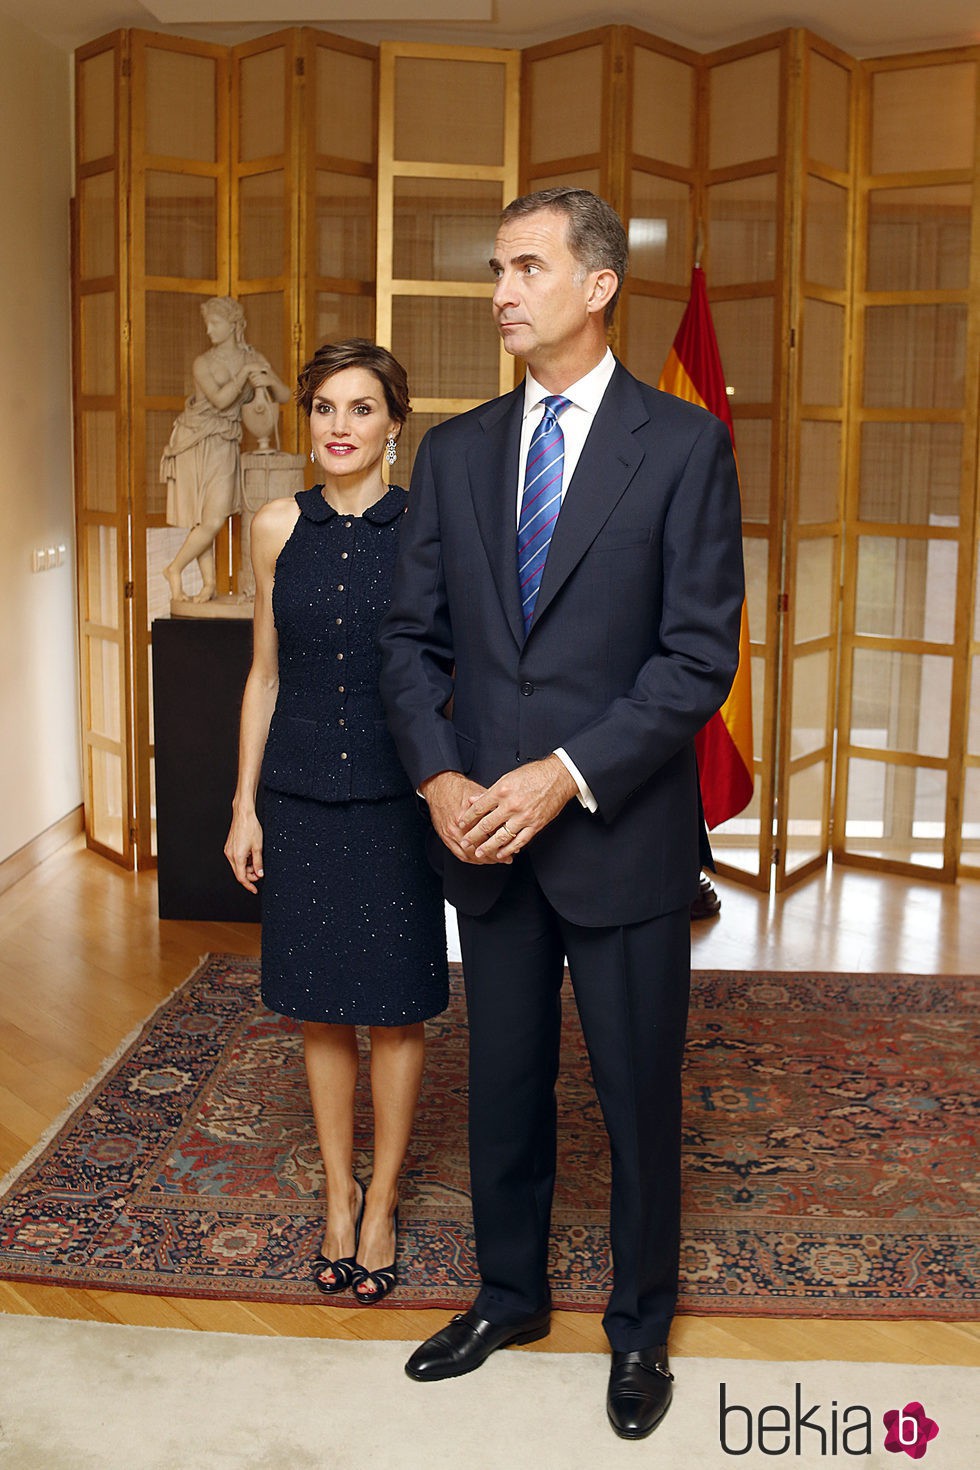 Los Reyes Felipe y Letizia en la embajada de España en Washington